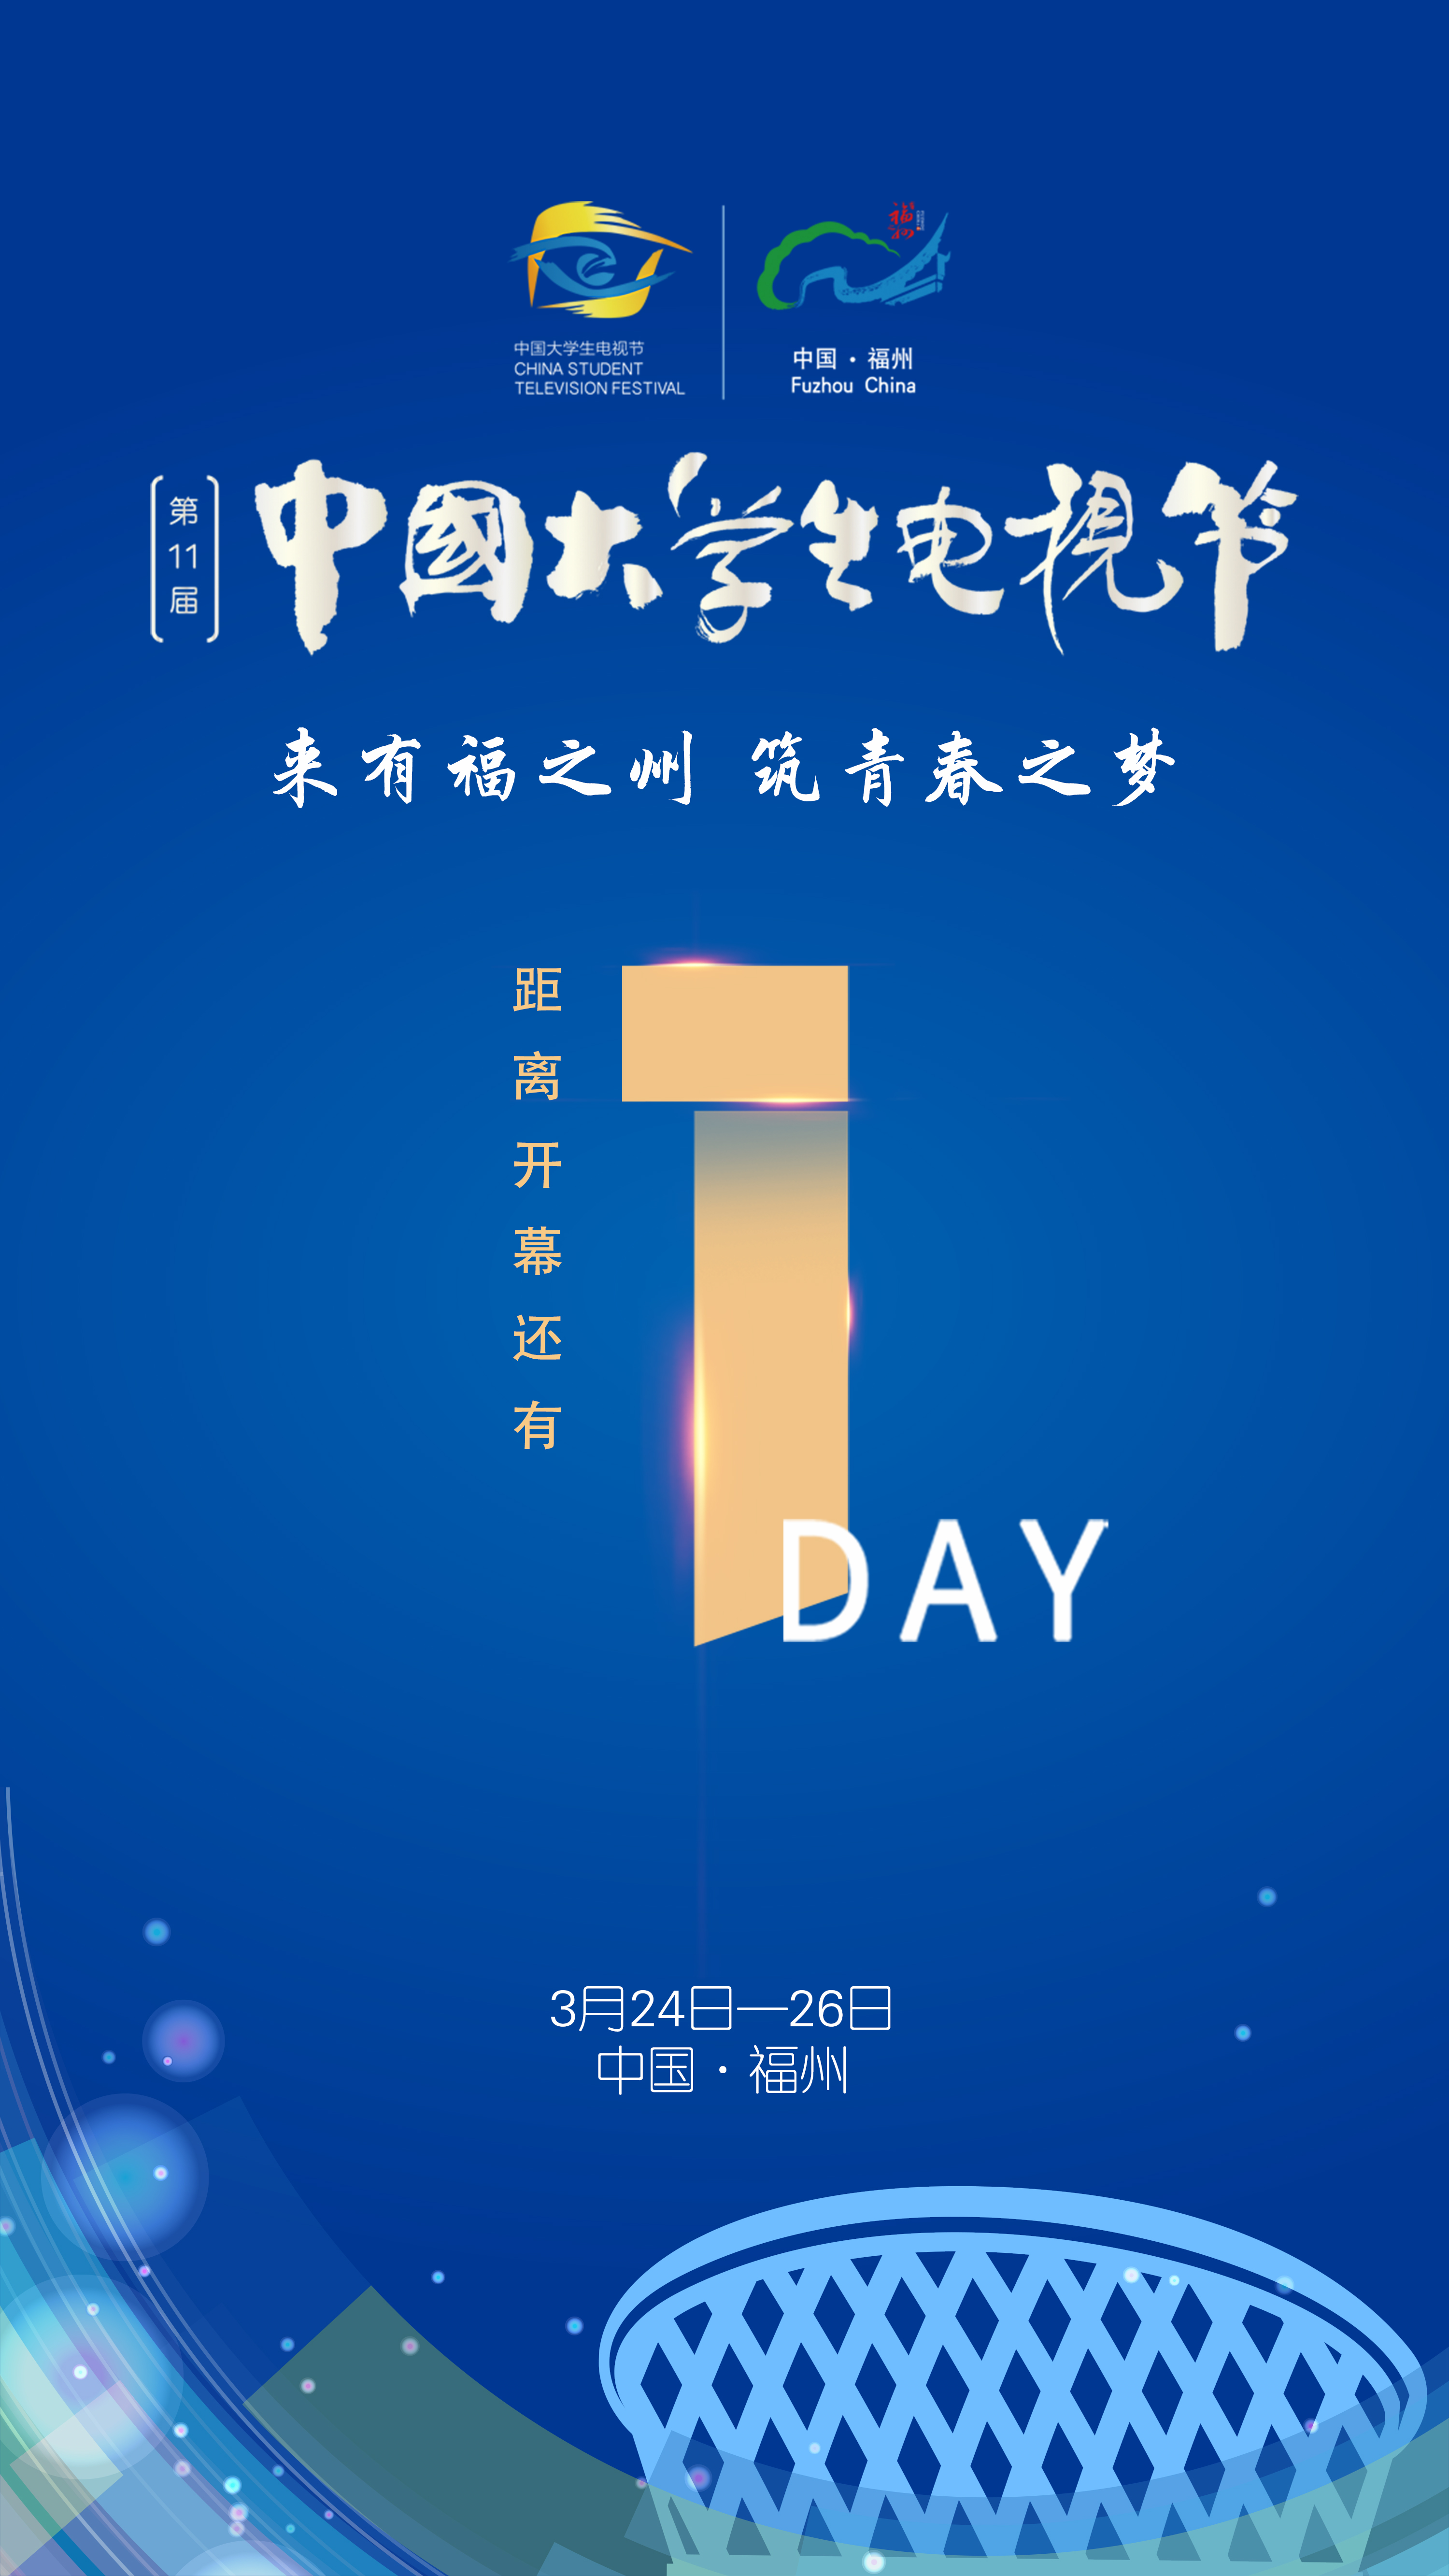 第十一届中国大学生电视节24日开幕